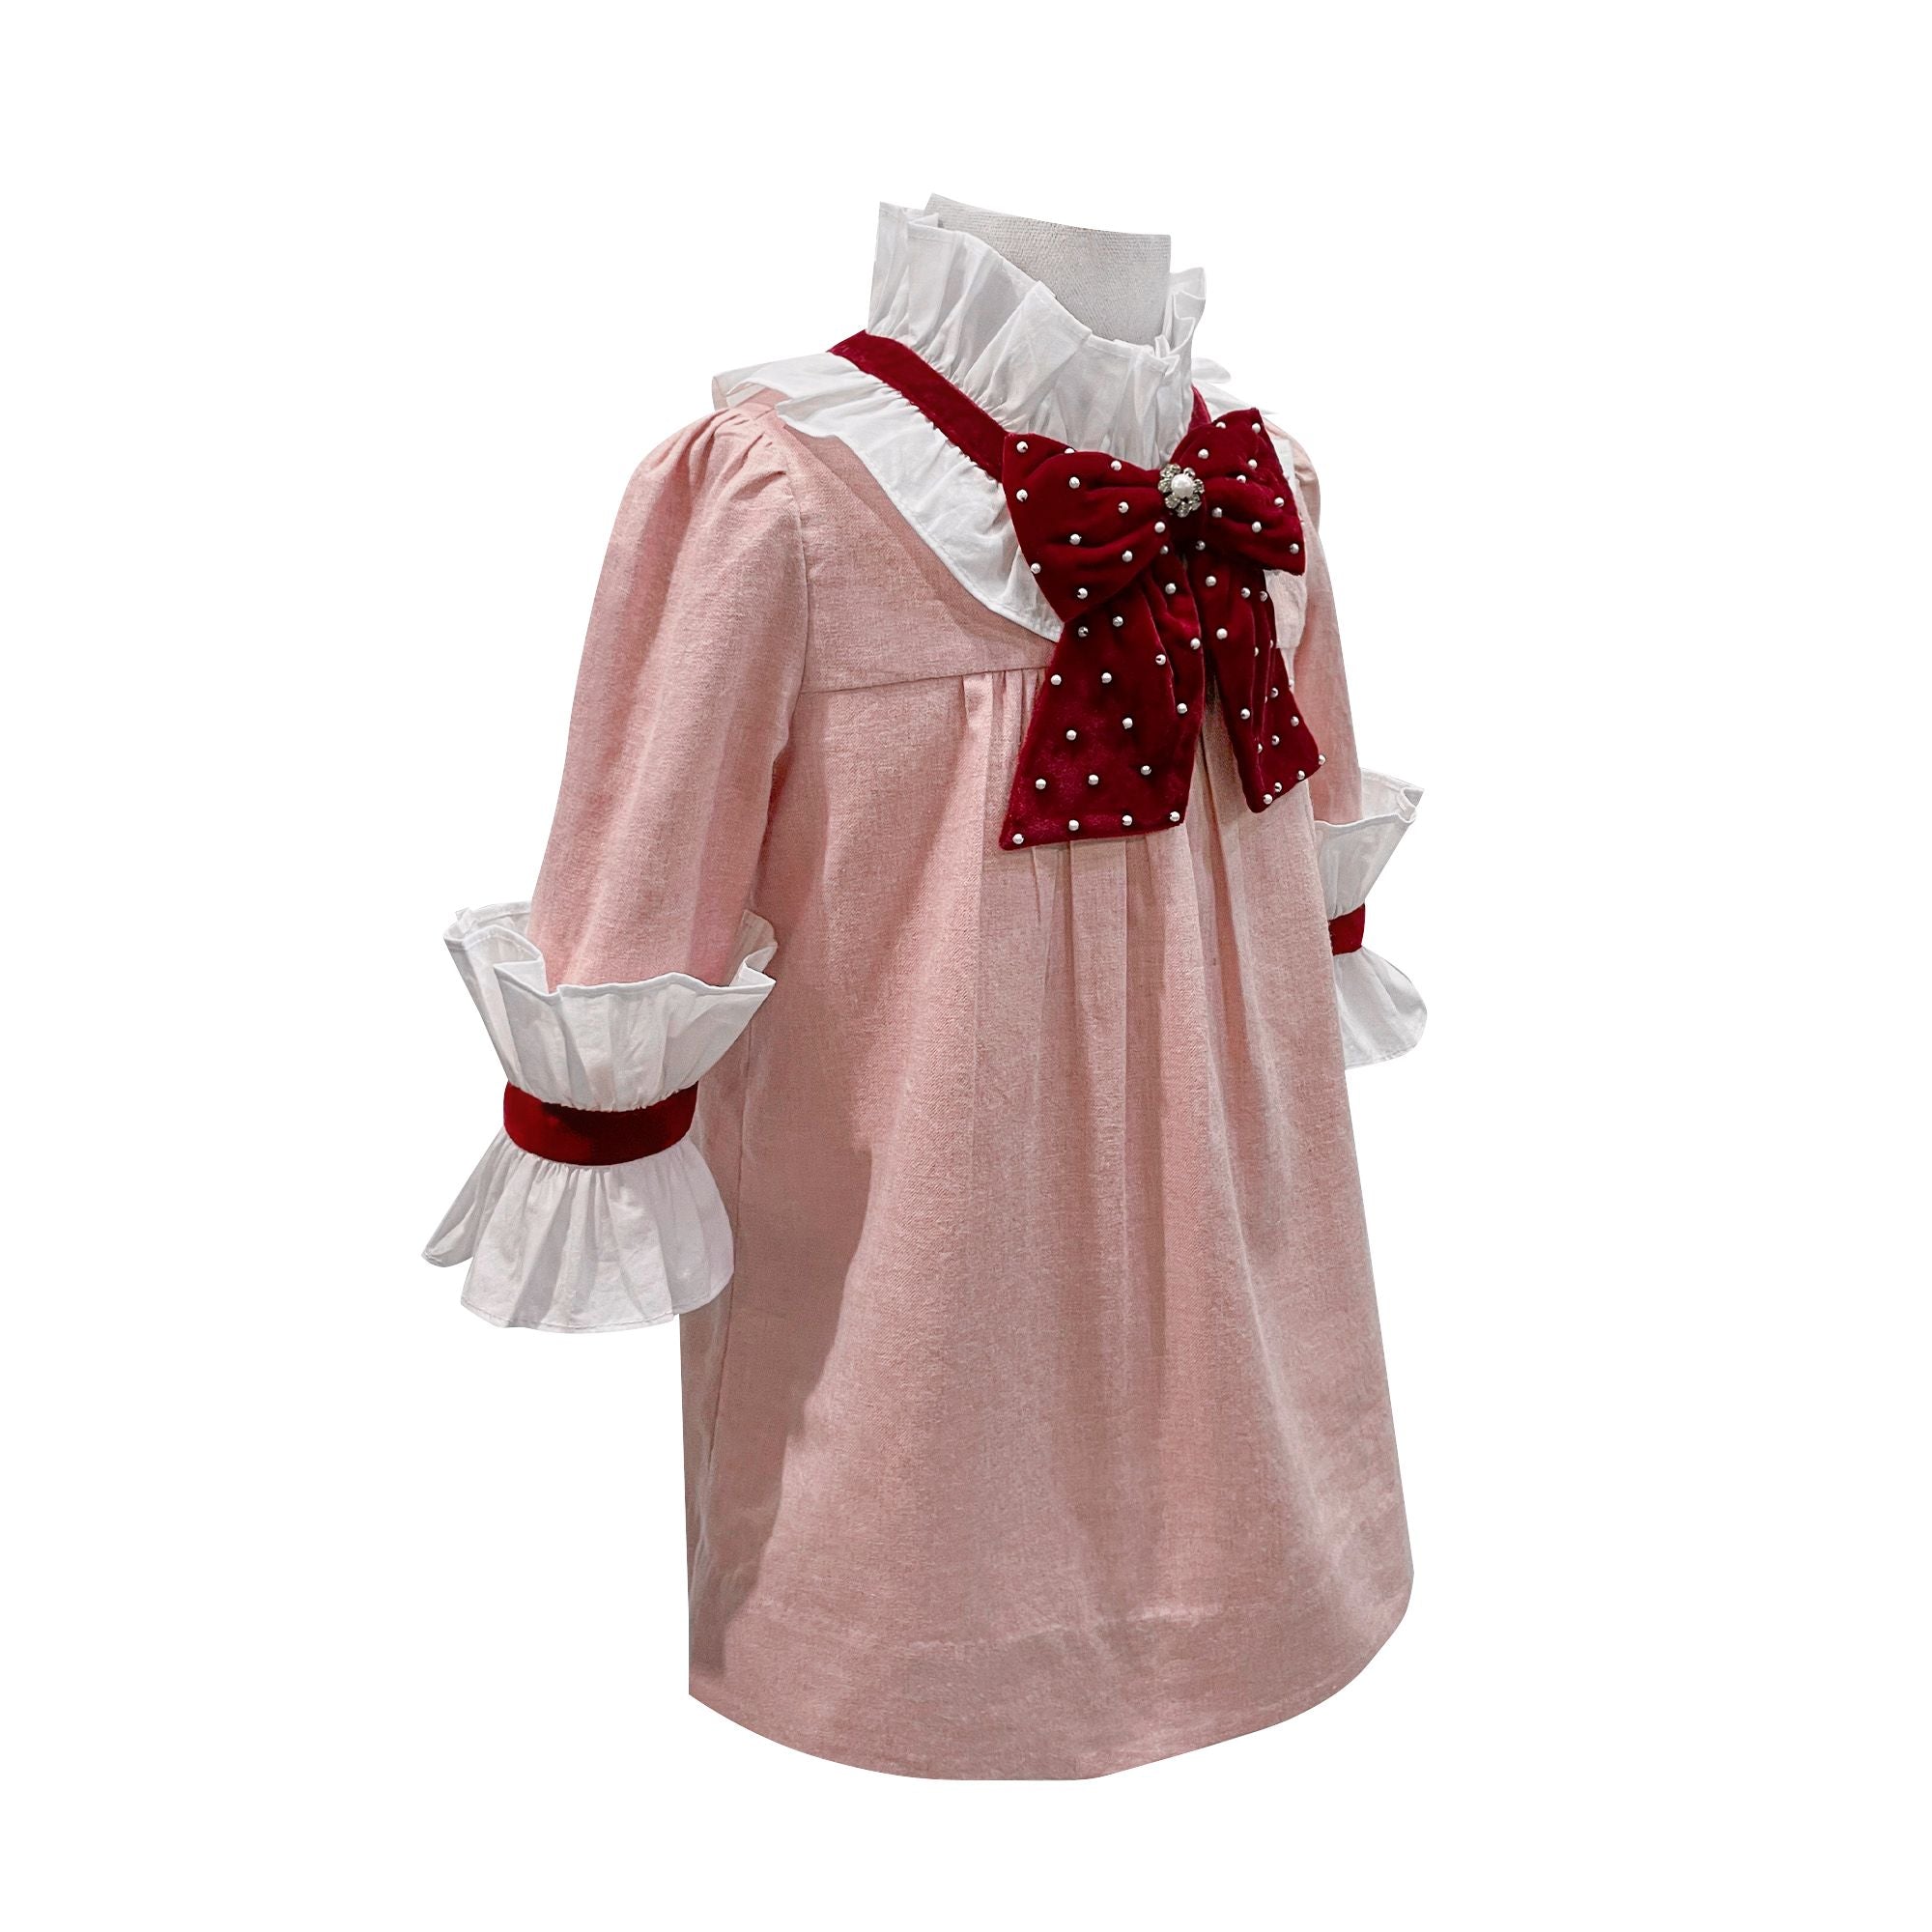 The Heidi Dress (Pink)